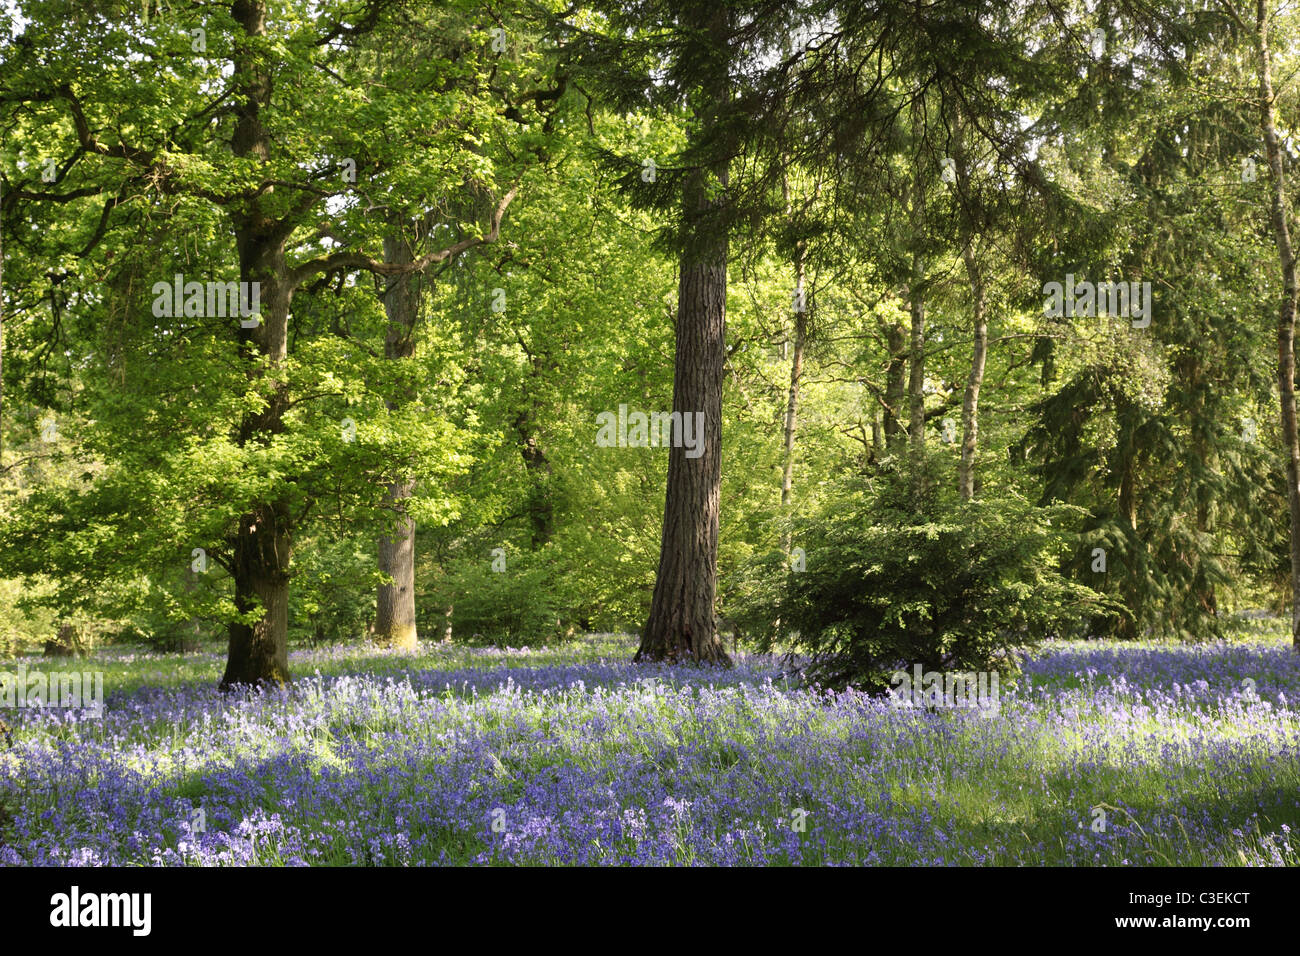 Les cloches fleurissent au printemps à l'arboretum Westonbirt, Gloucestershire, Angleterre, Royaume-Uni Banque D'Images